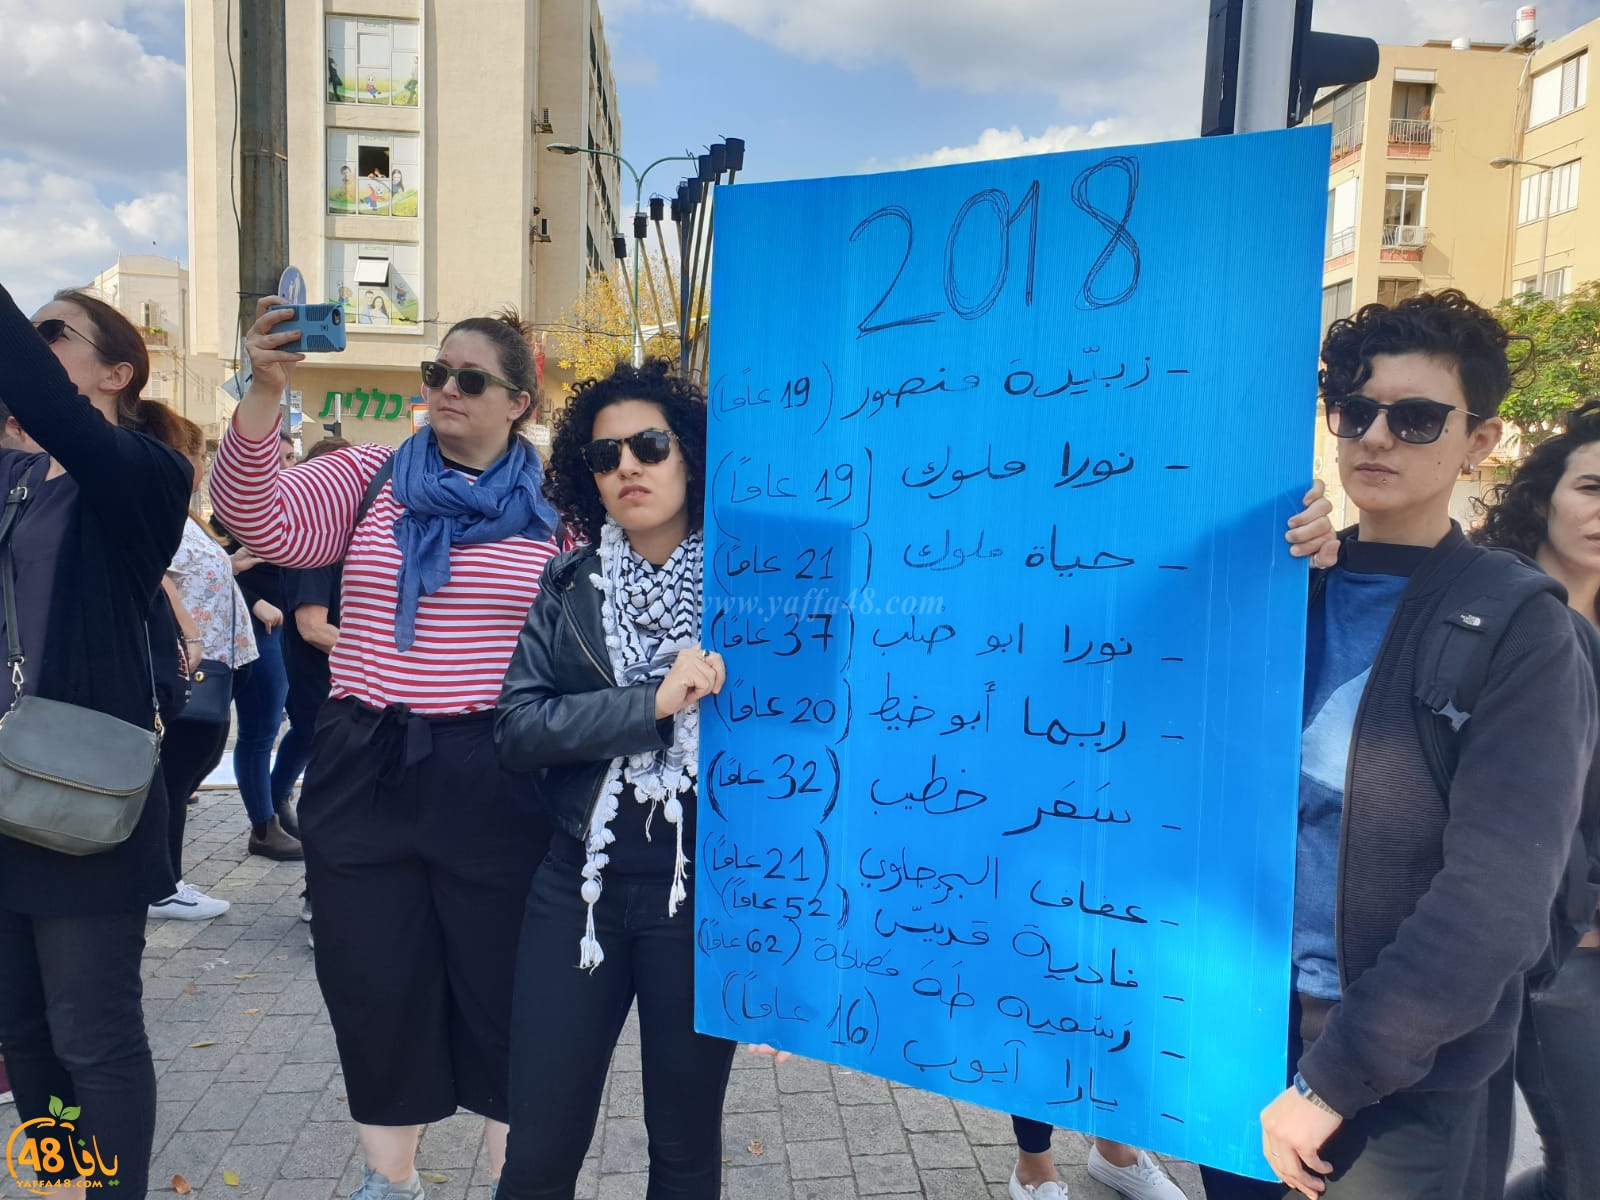  بالفيديو: تظاهرة نسائية حاشدة في يافا ضد قتل النساء واغلاق شارع شديروت يروشلايم 